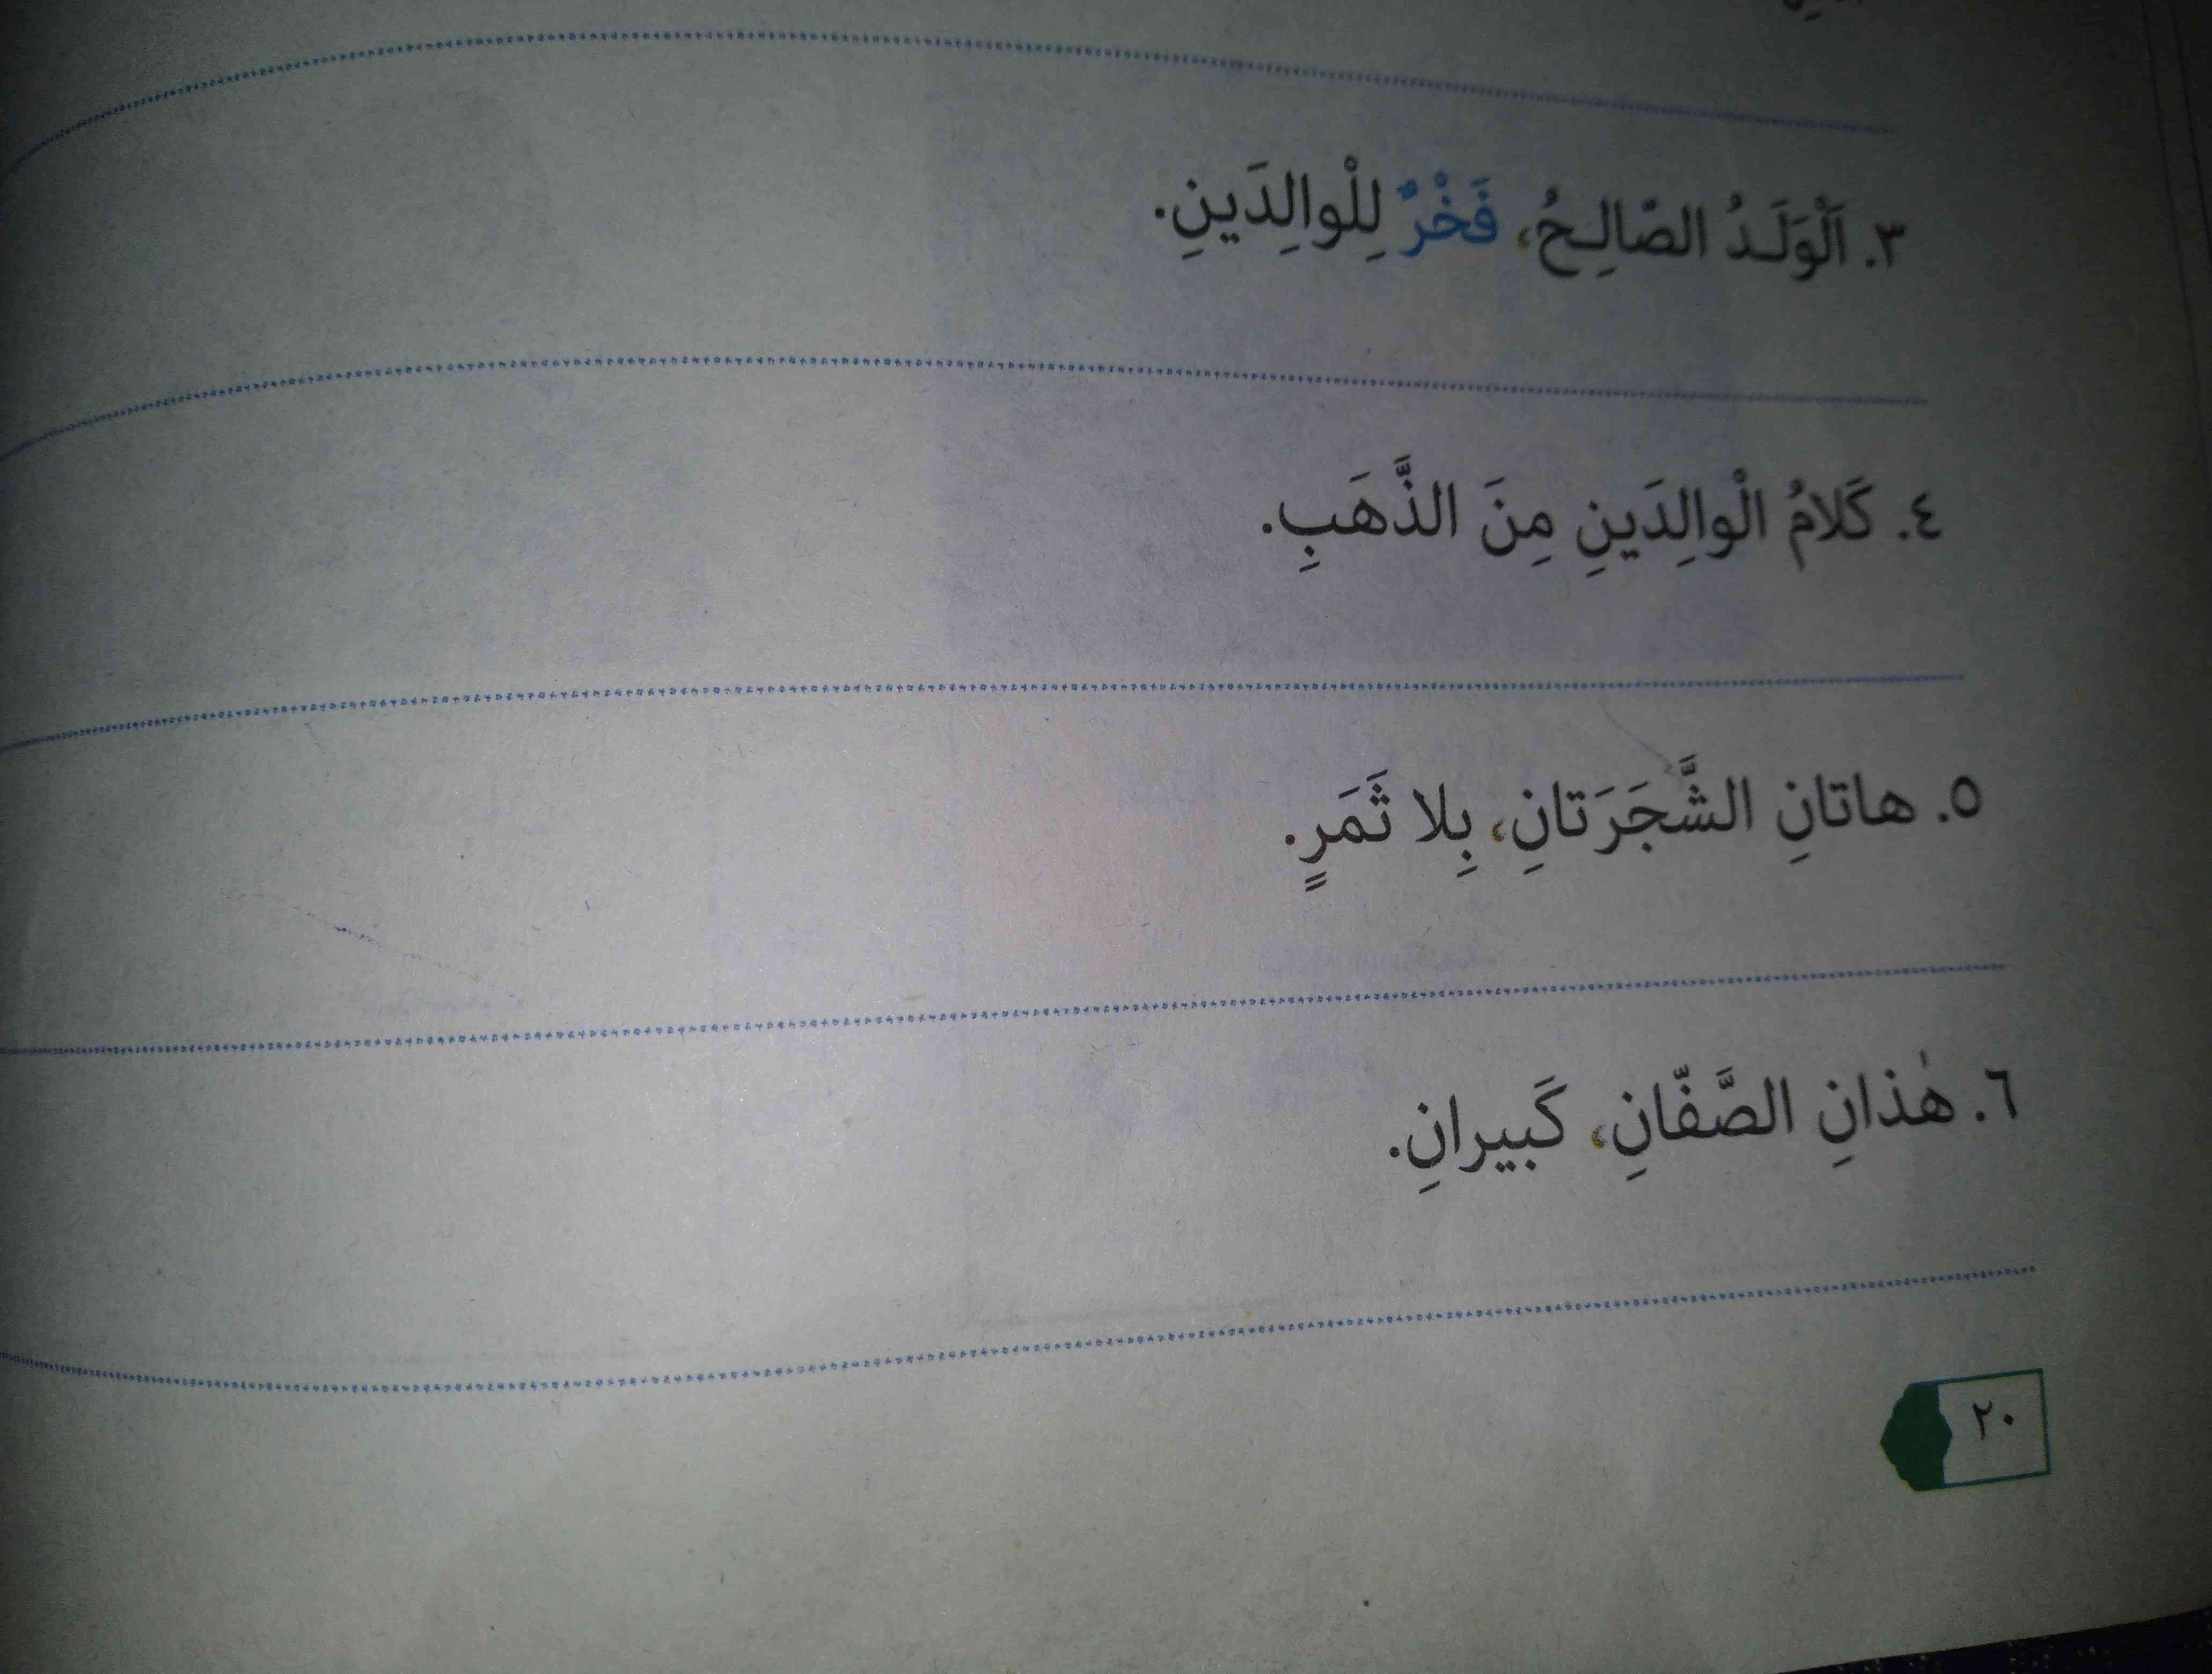 سلام دوستان صفحه ای 20 عربی  بگید  لطفا سریع تر تاج میدم  به نفر اول و دوم و همچنین به سوم 